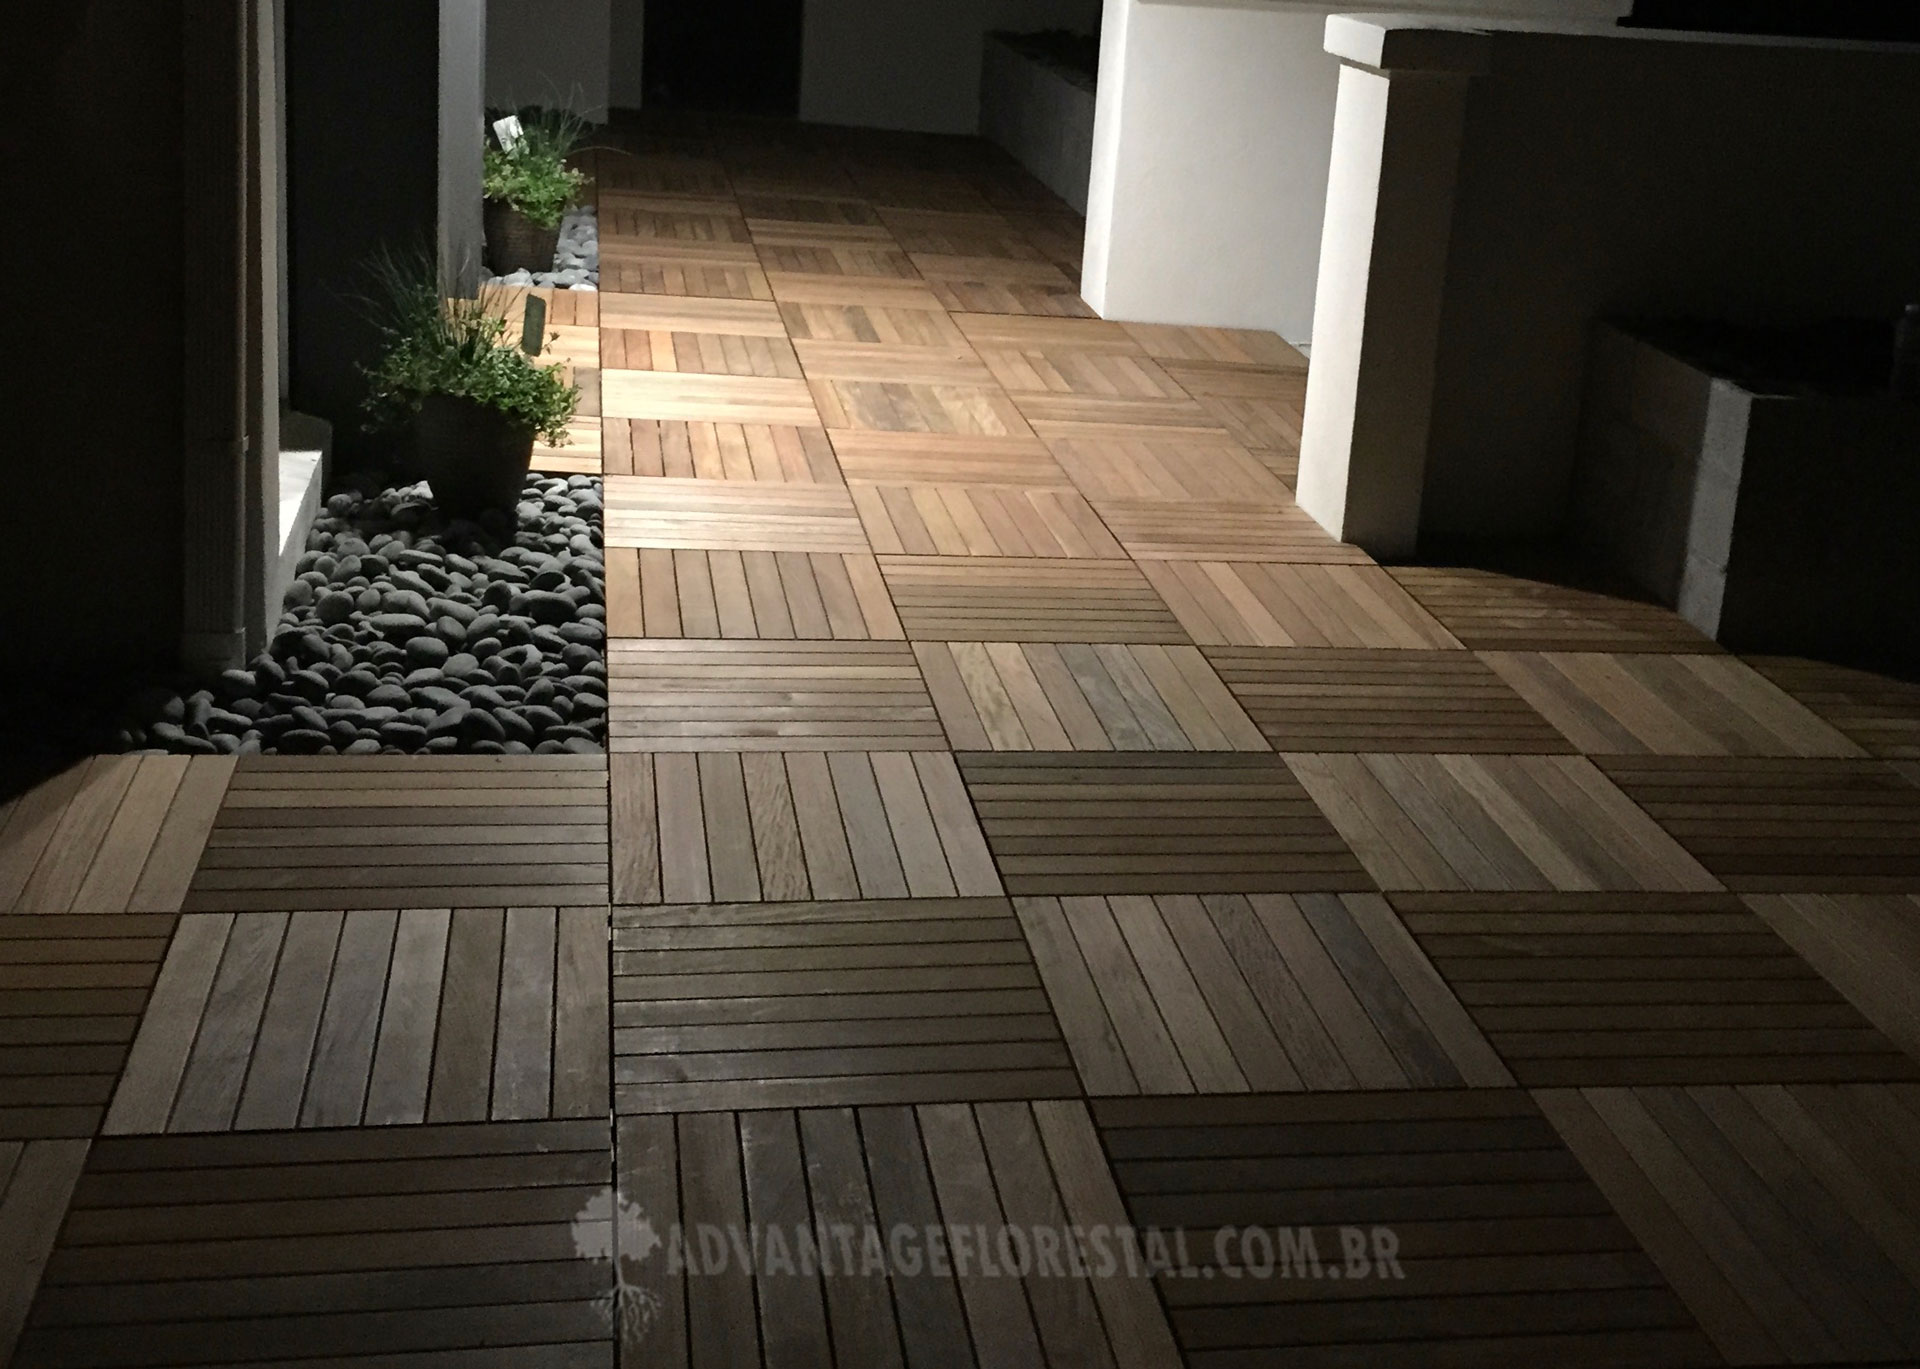 Deck Tiles sendo fabricado em Belem Brazil